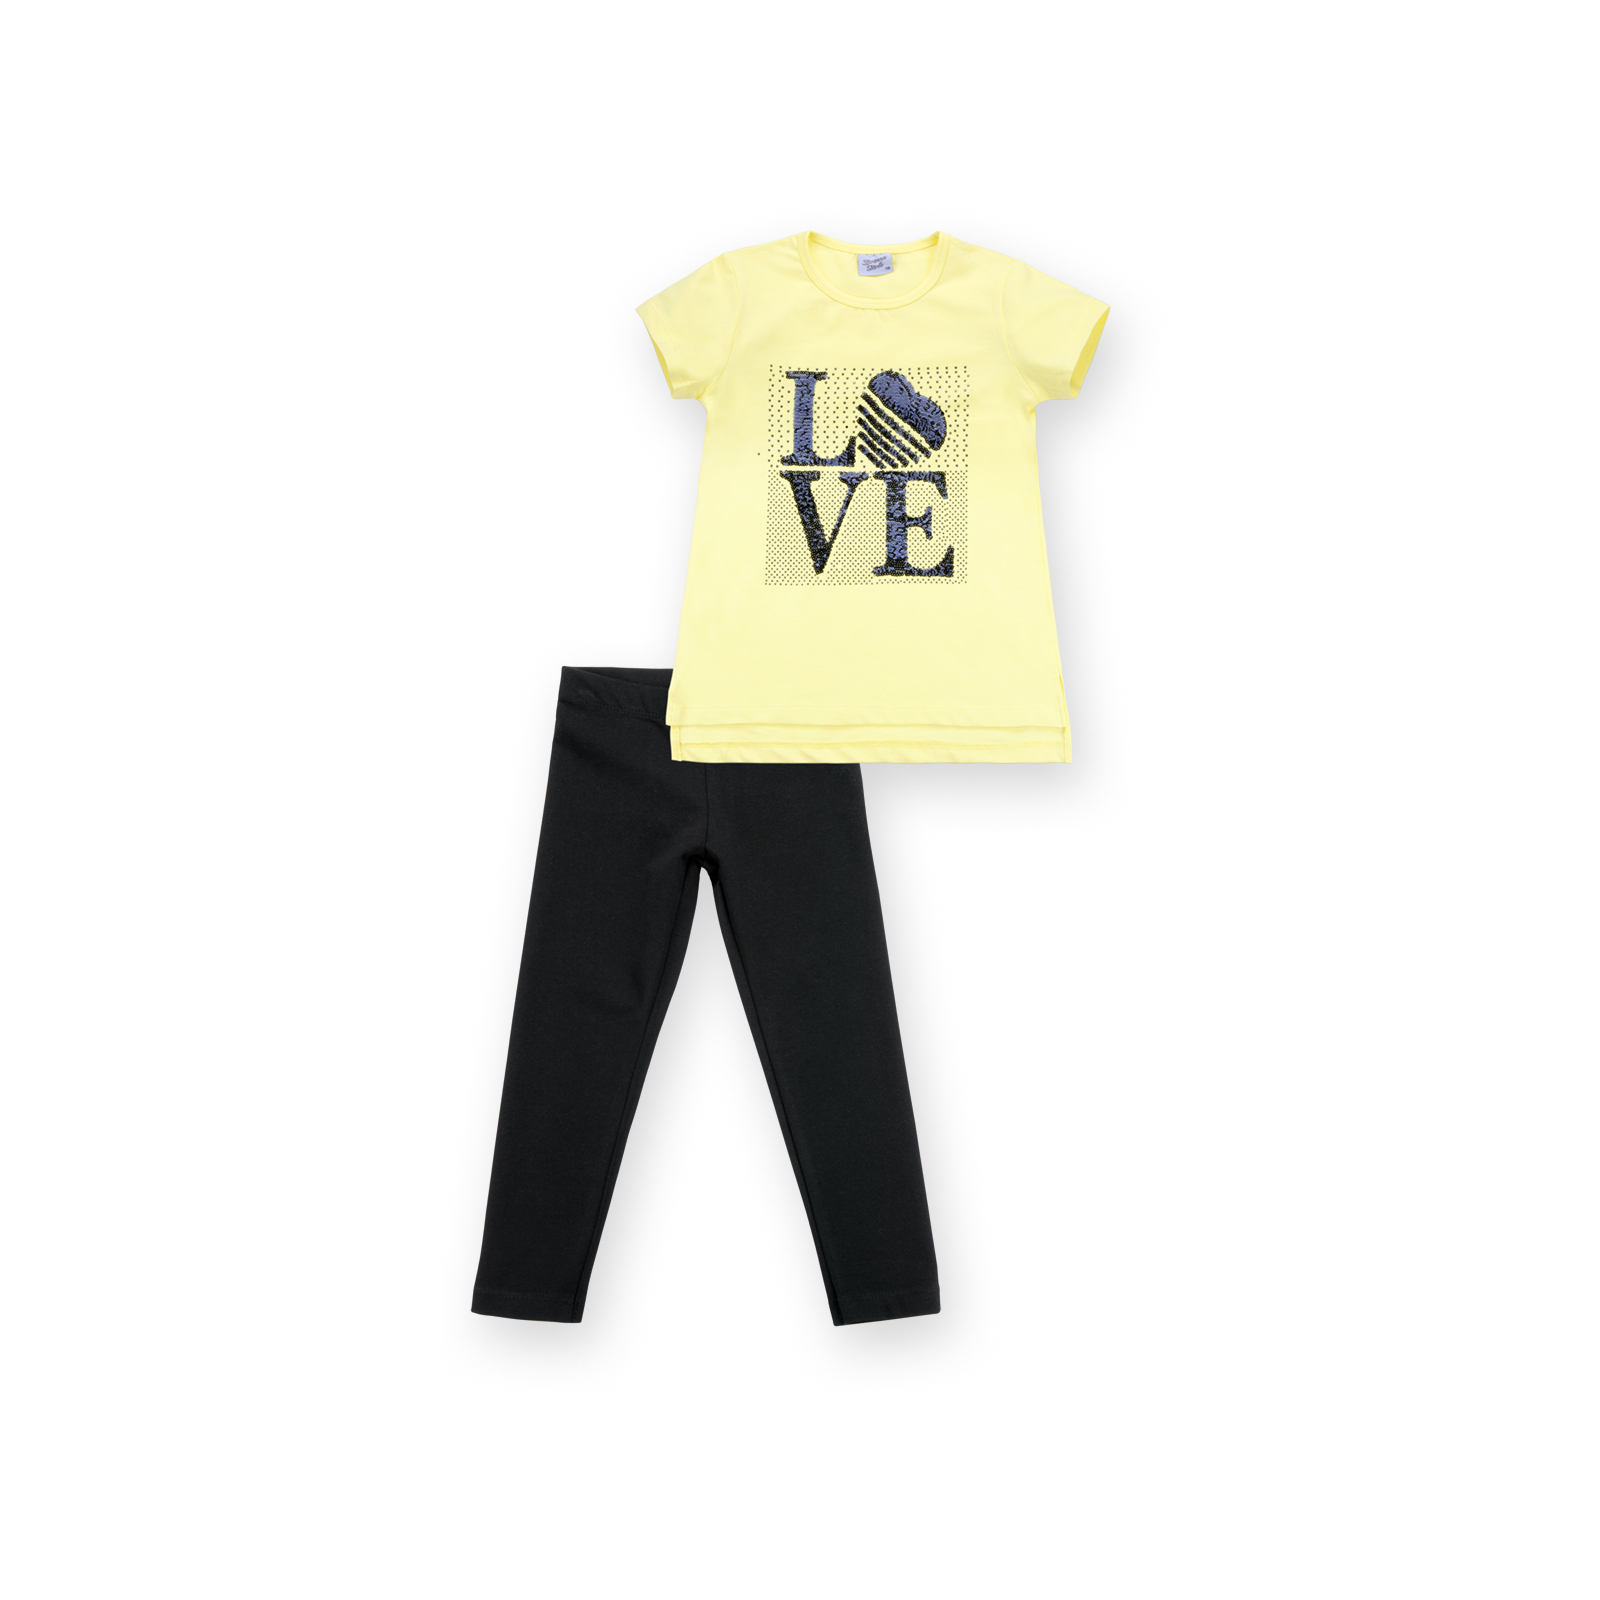 Набор детской одежды Breeze с надписью "LOVE" из пайеток (8307-134G-pink)